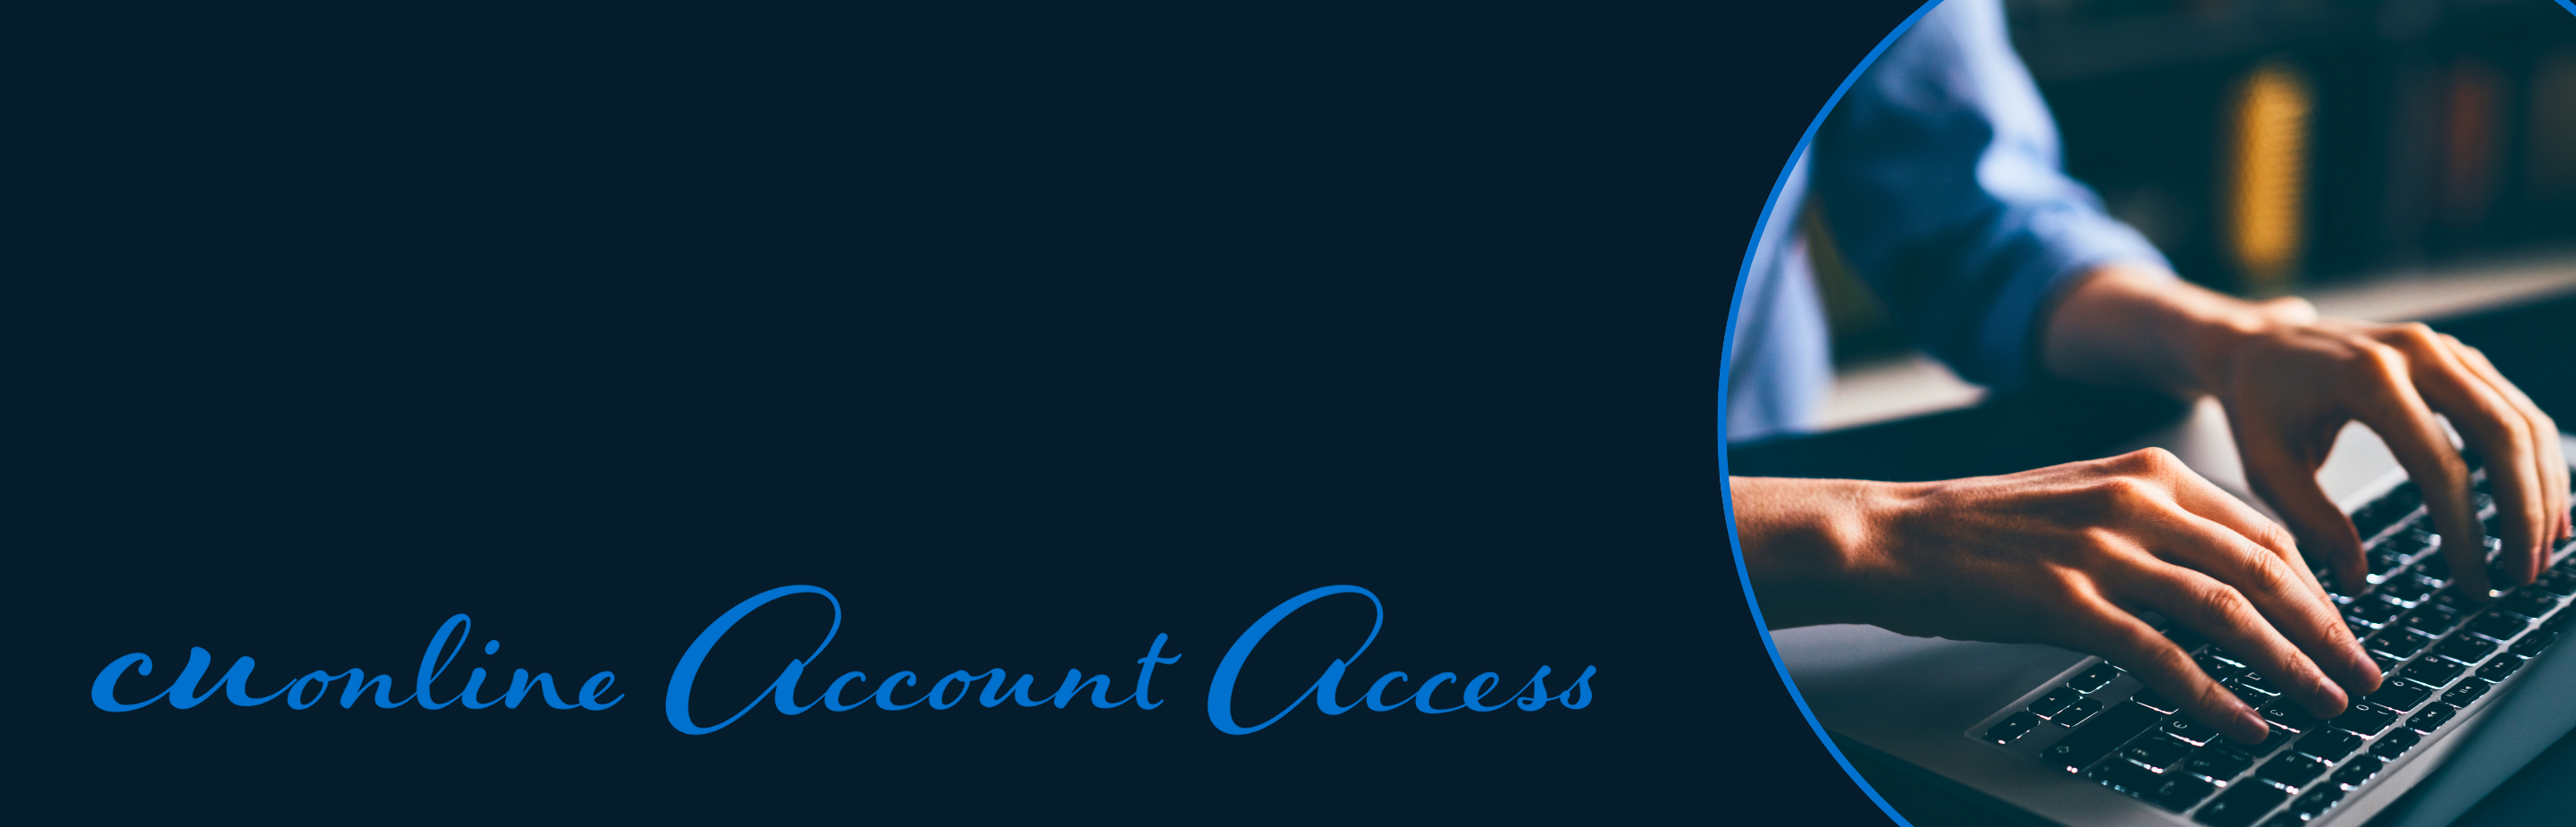 CU Online Account Access